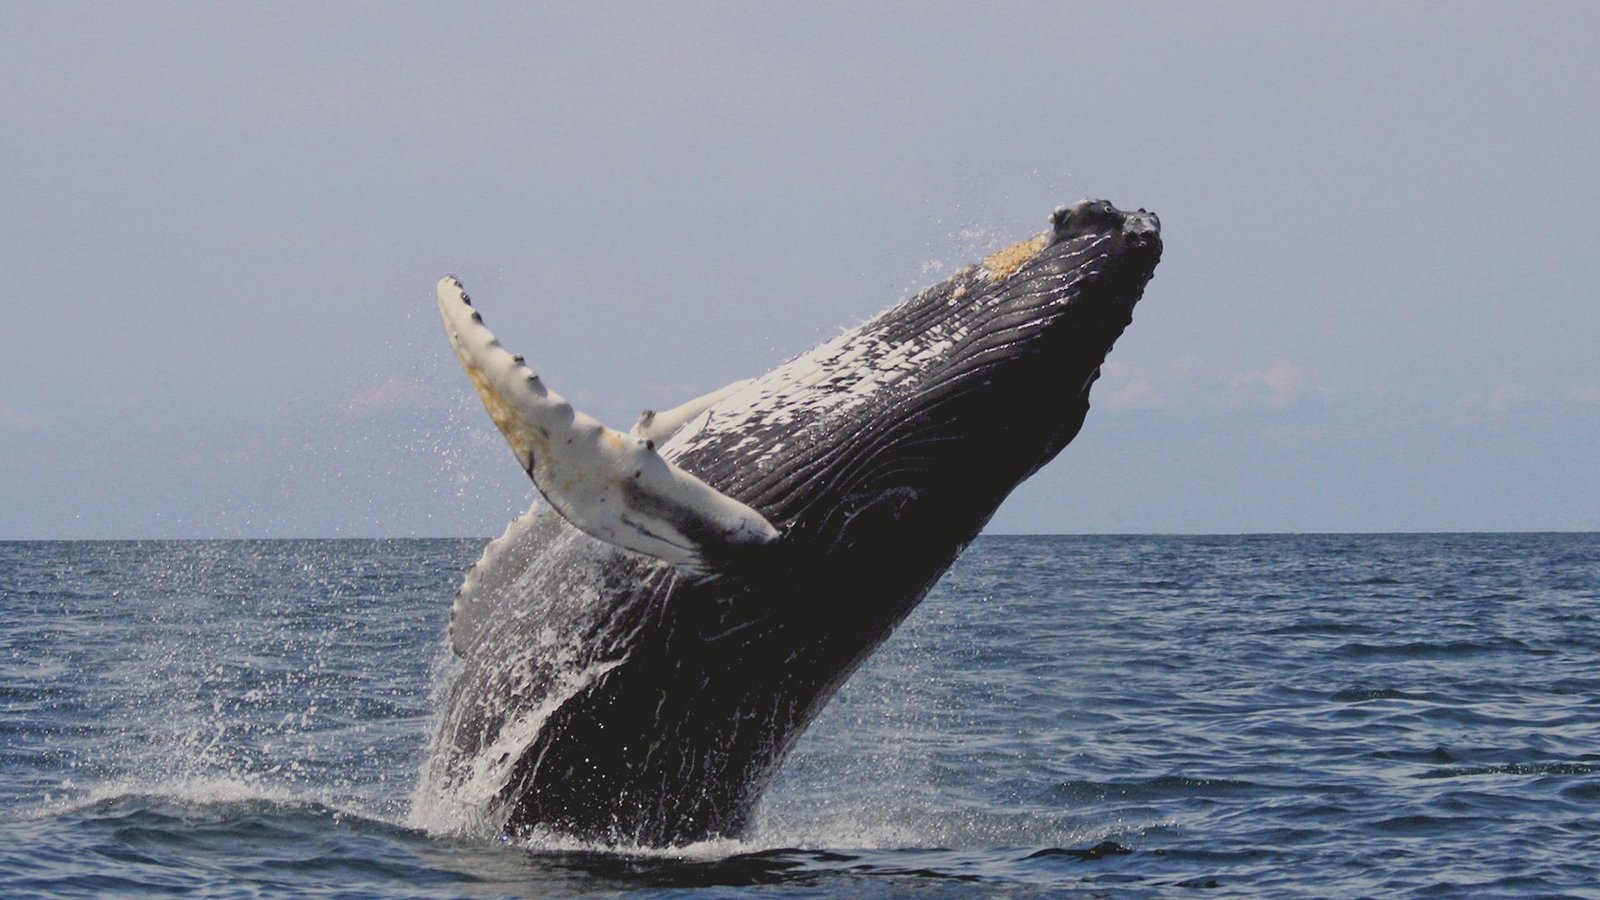 Plan Avistamiento de Ballenas - Whale watching Colombia